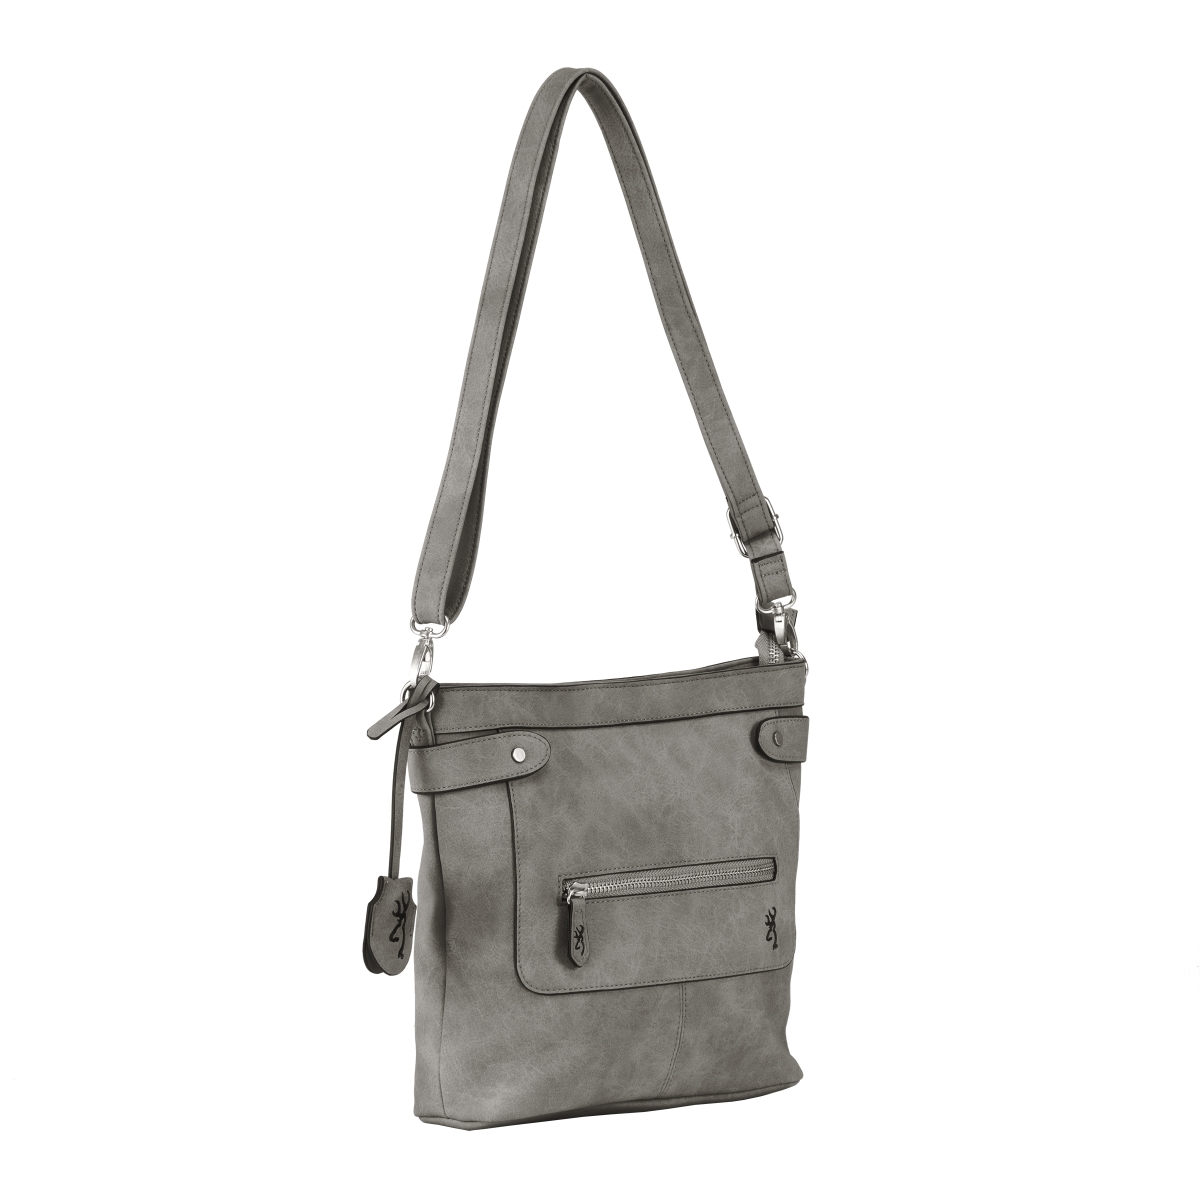 B000012200299 Catrina Handbag - Gray